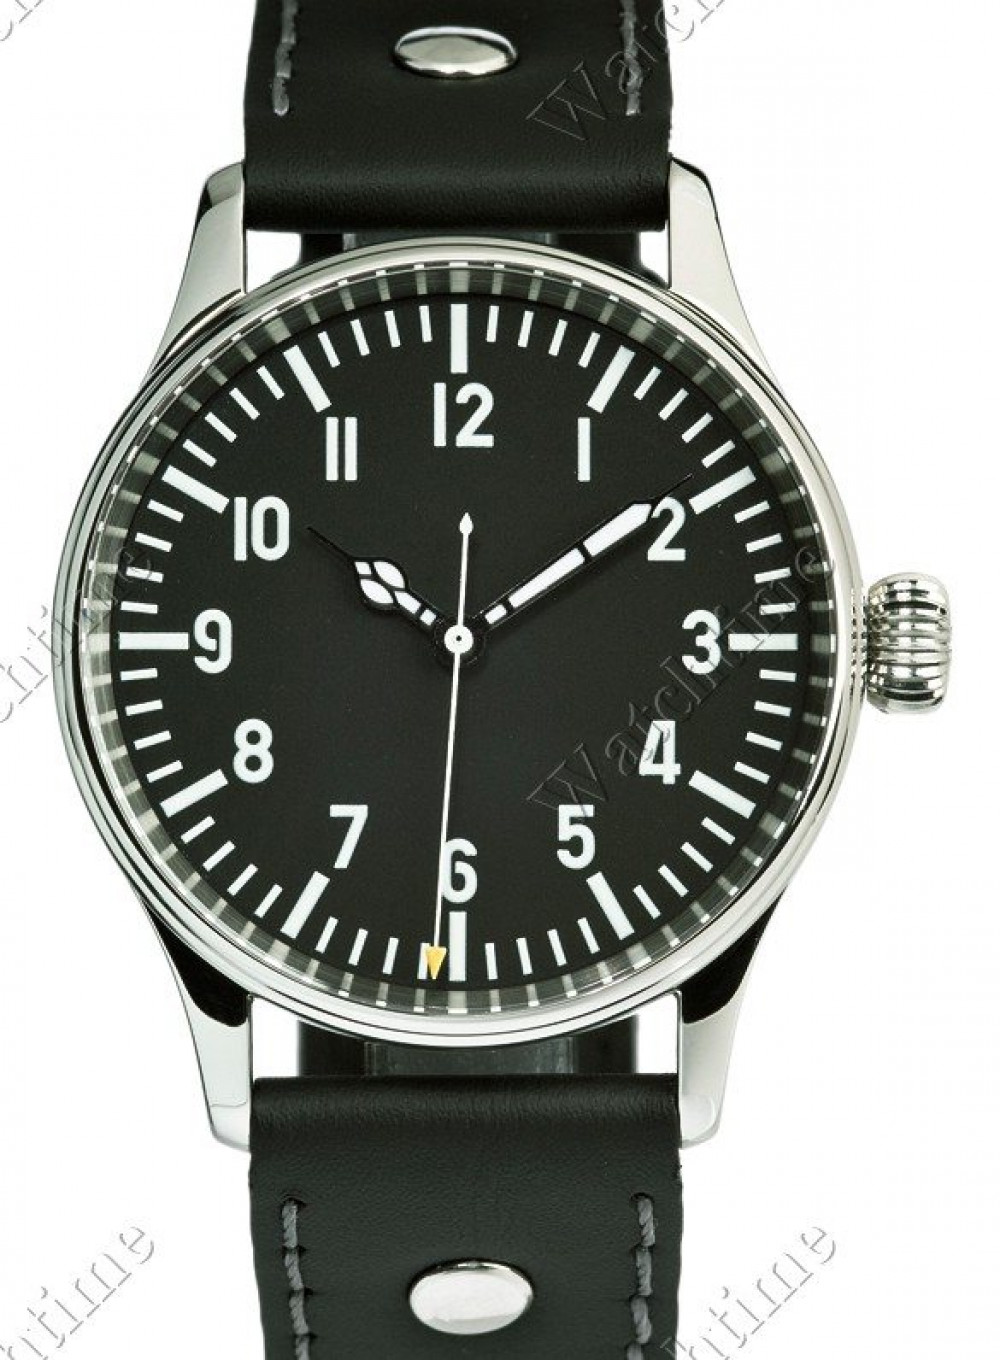 Zegarek firmy Mercure, model Aviation 42